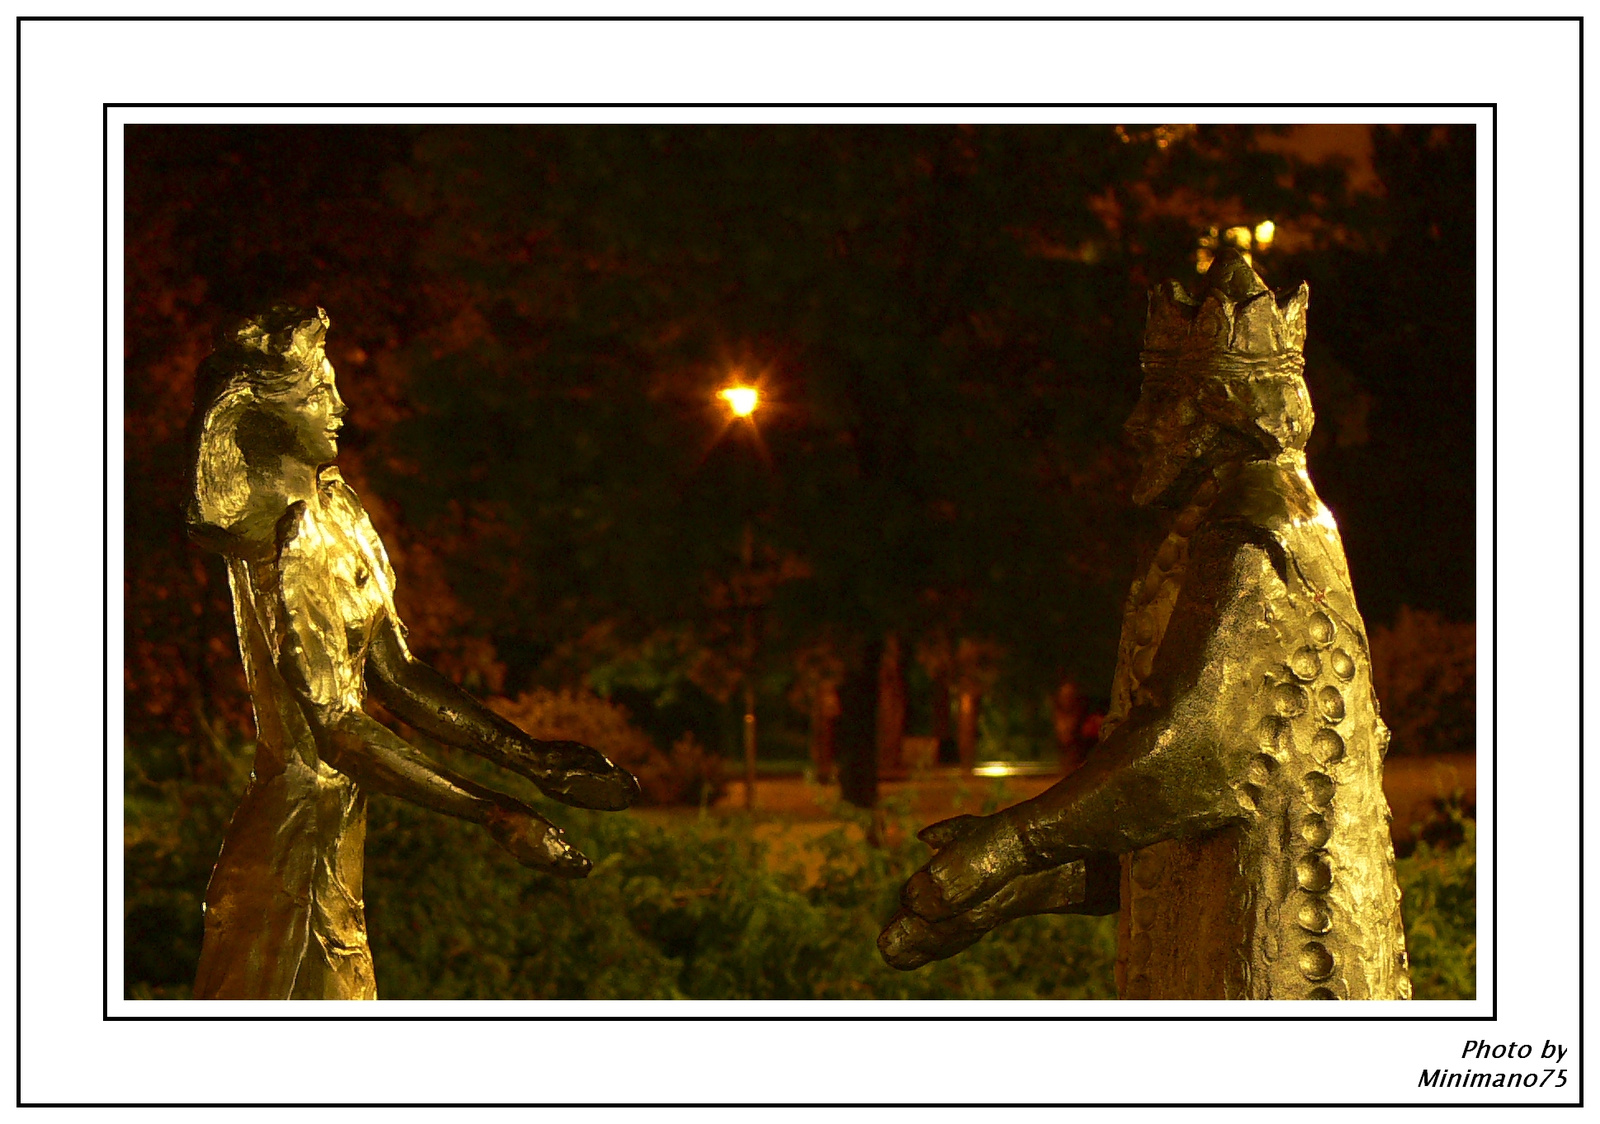 király és királynője avagy Pest és Buda